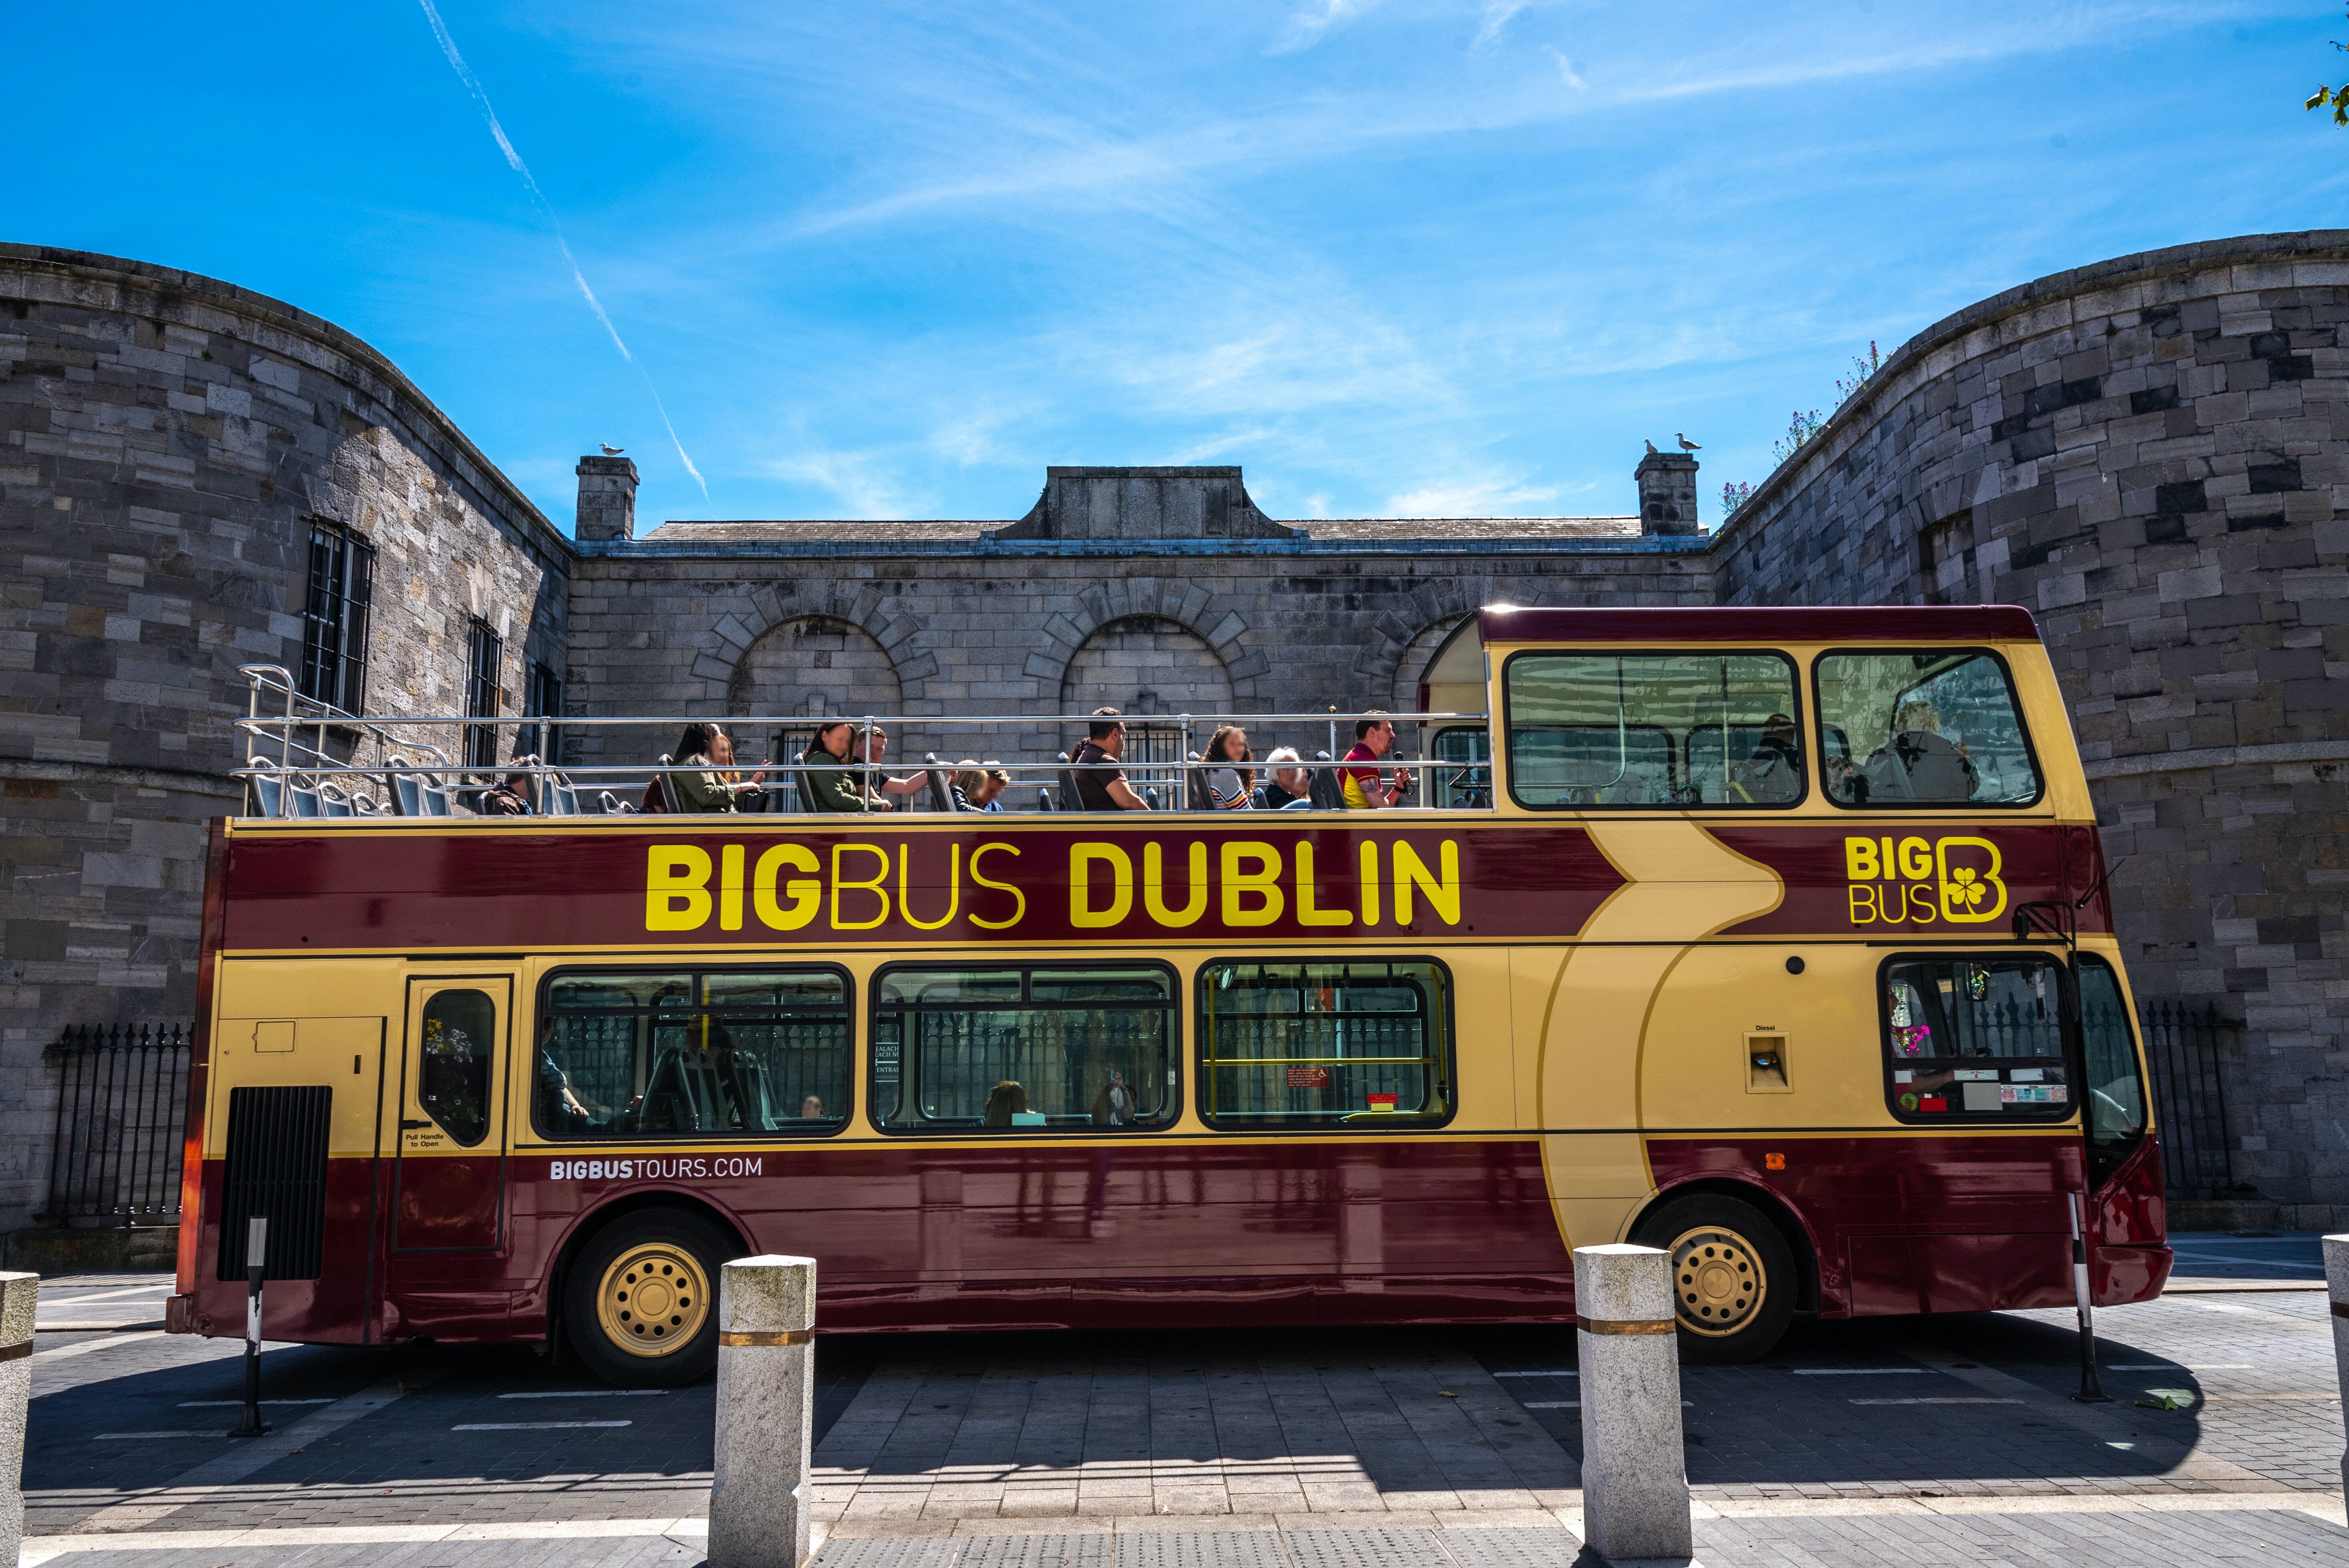 Dublin Pass | Ingresso gratuito alla Guinness Storehouse, alla Cattedrale di St. Patrick e altre attrazioni